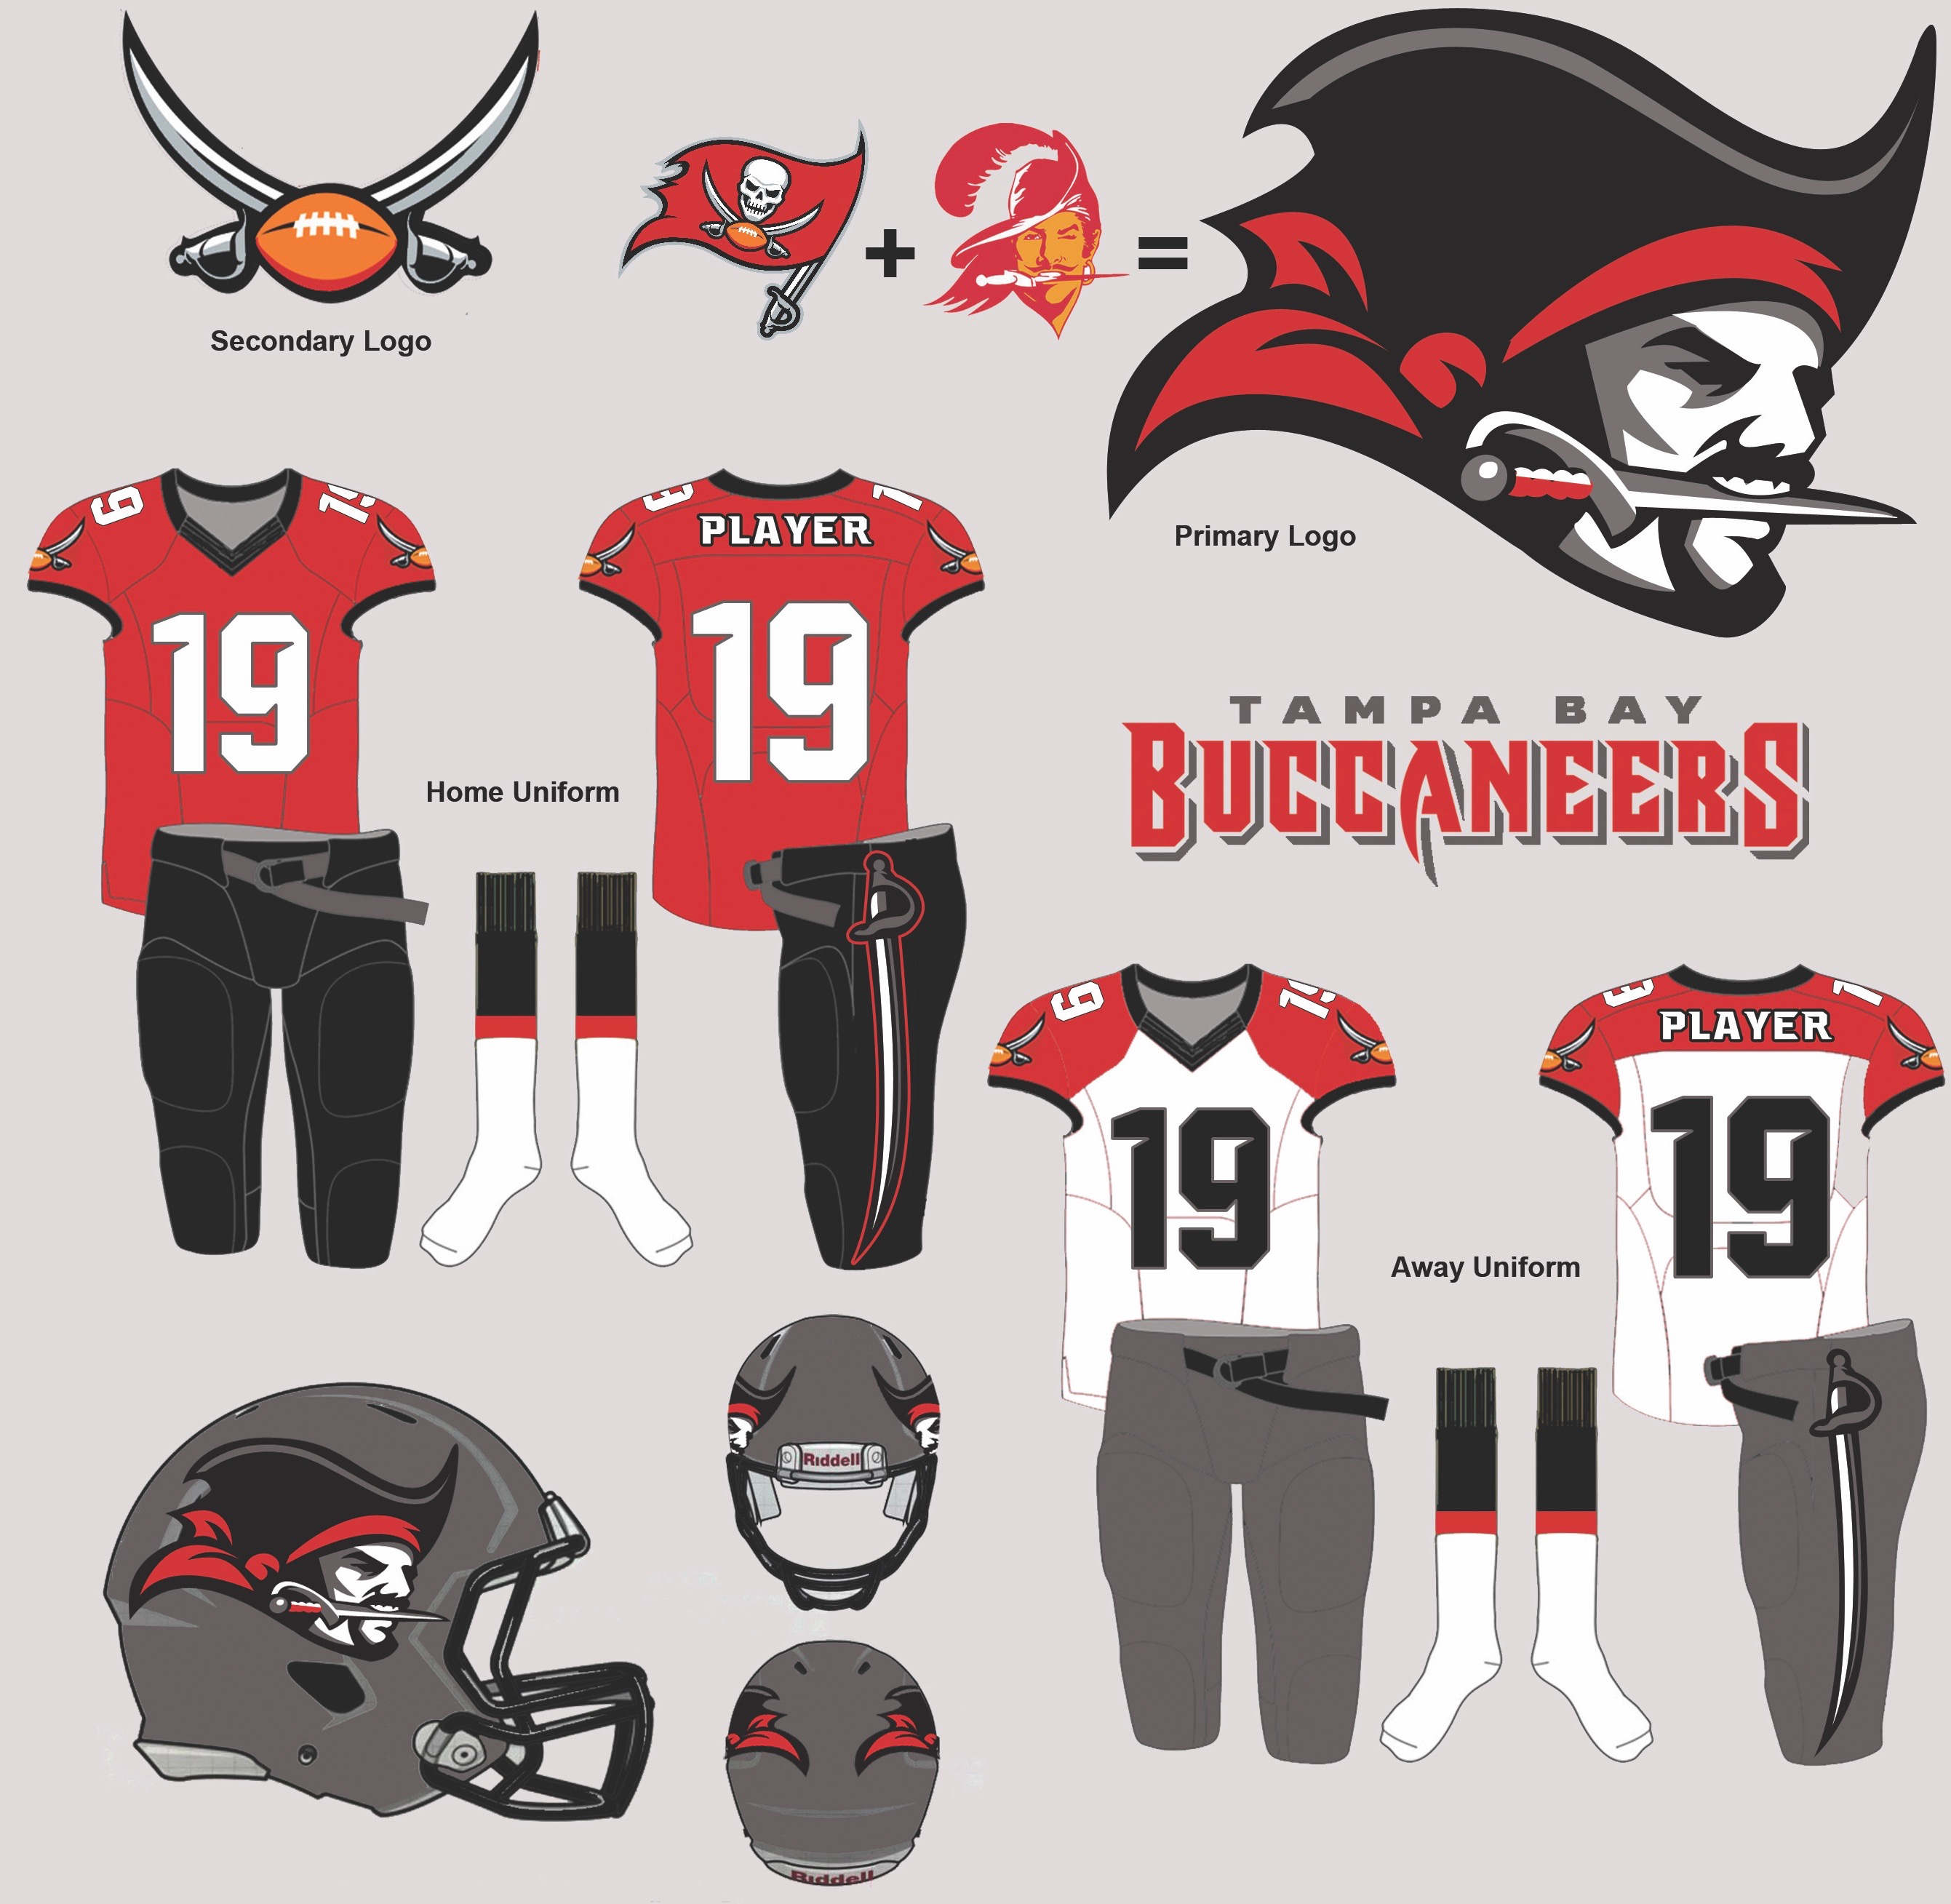 buccaneers 2020 uniforms